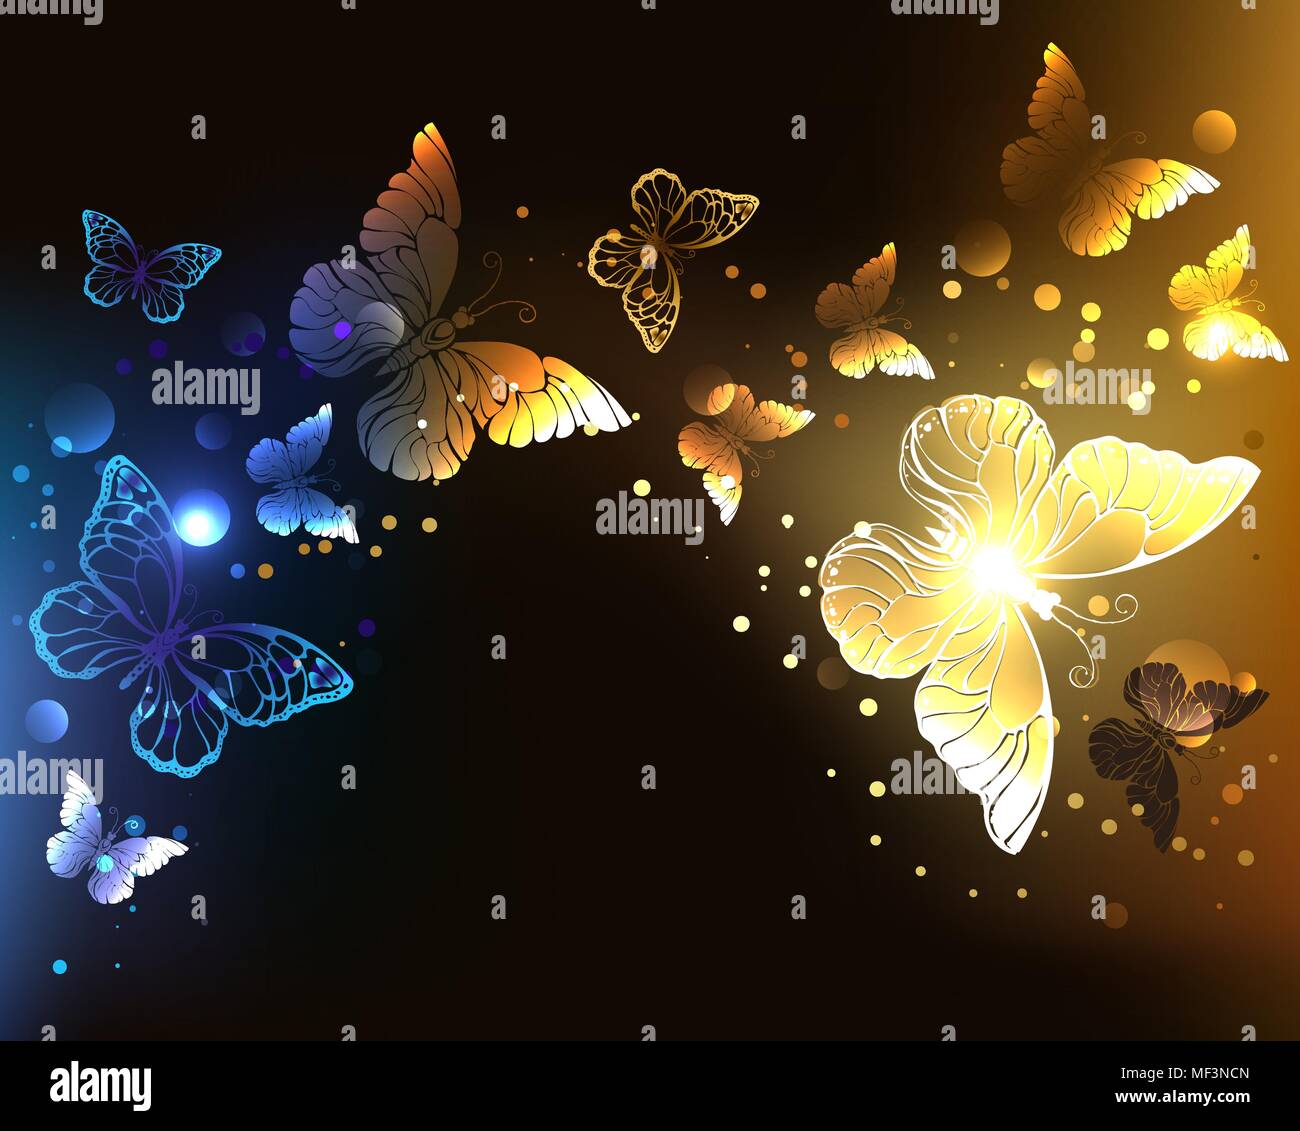 Fabelhaft, Glühen, Nacht Schmetterlinge auf dunkle Nacht Hintergrund. Stock Vektor